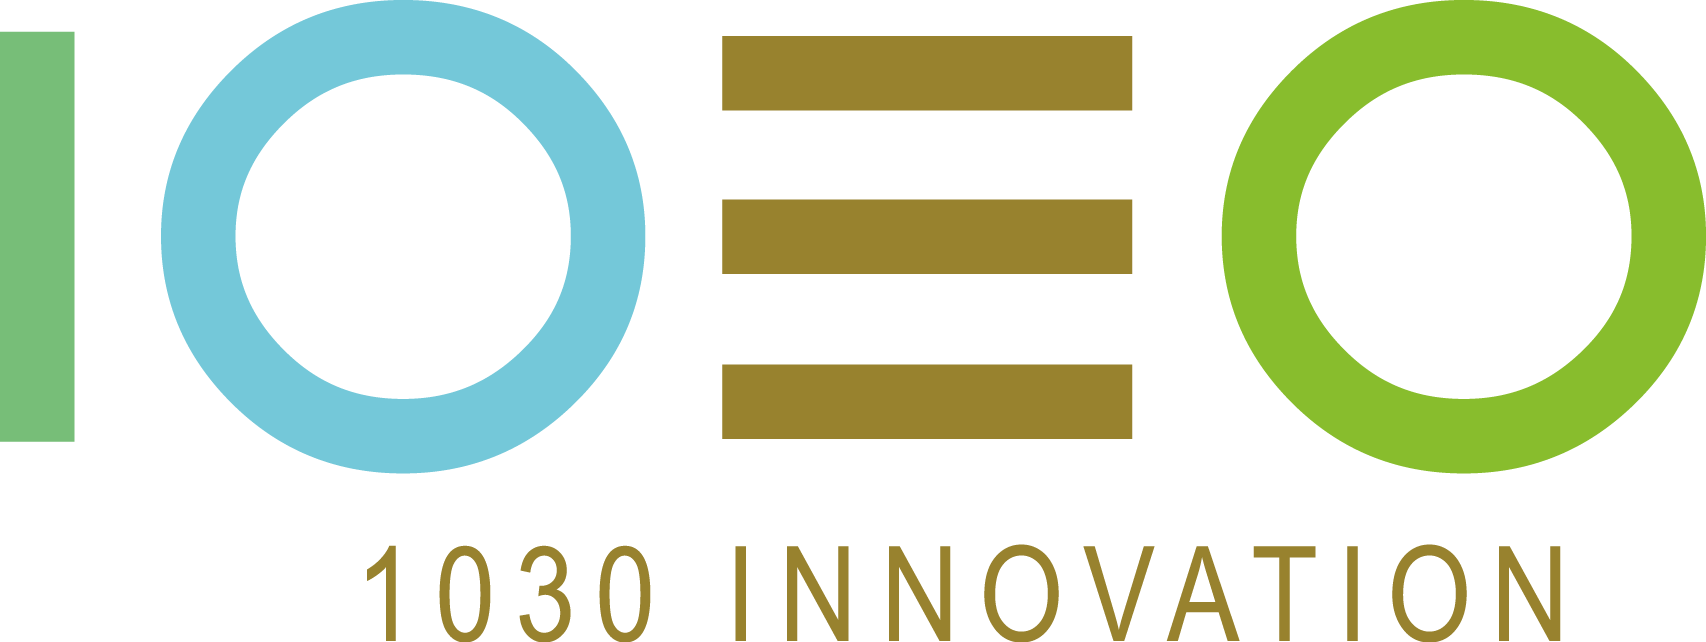 1030 Innovation